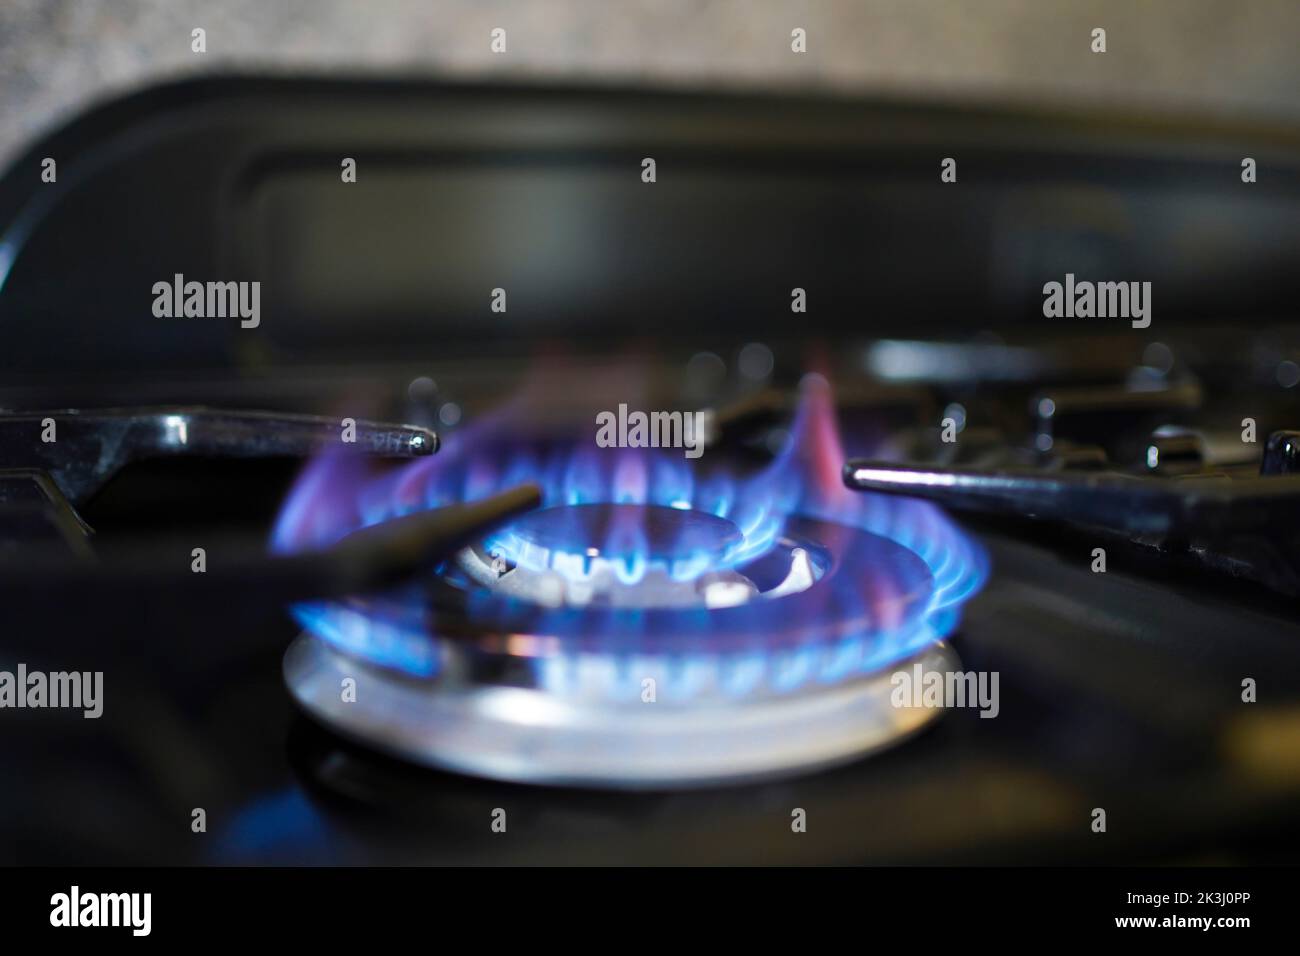 Cucinare con il gas diventa difficile come il costo di vivere sta aumentando a livello catastrofico. Crisi energetica nazionale. Fiamma blu su un anello di gas del fornello. Foto Stock